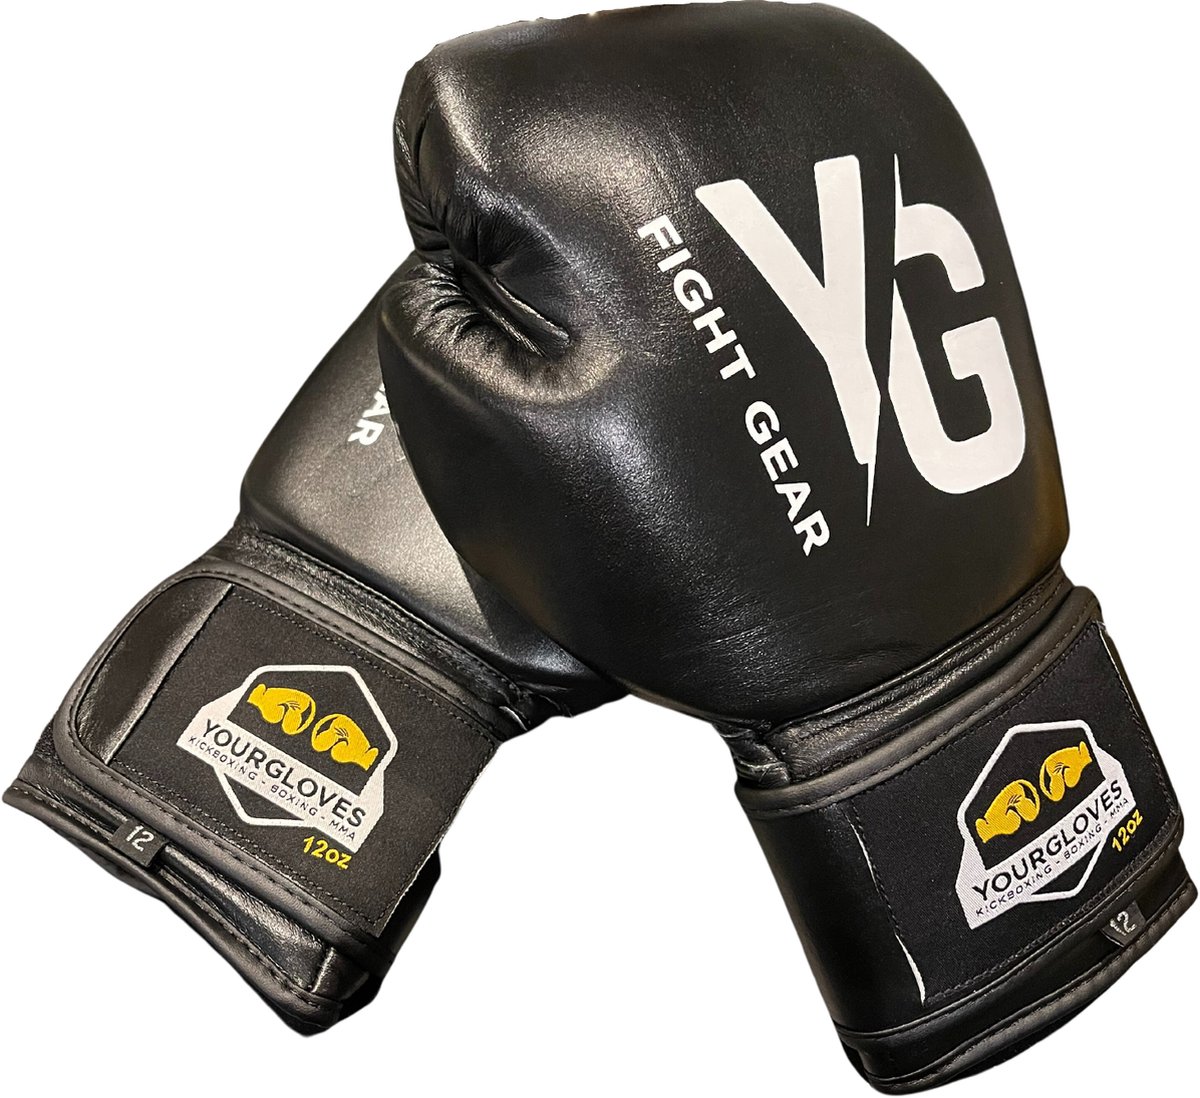 (kick)Bokshandschoenen - YourGloves - Zwart kleur - 12 oz - vechtsport - dames en heren